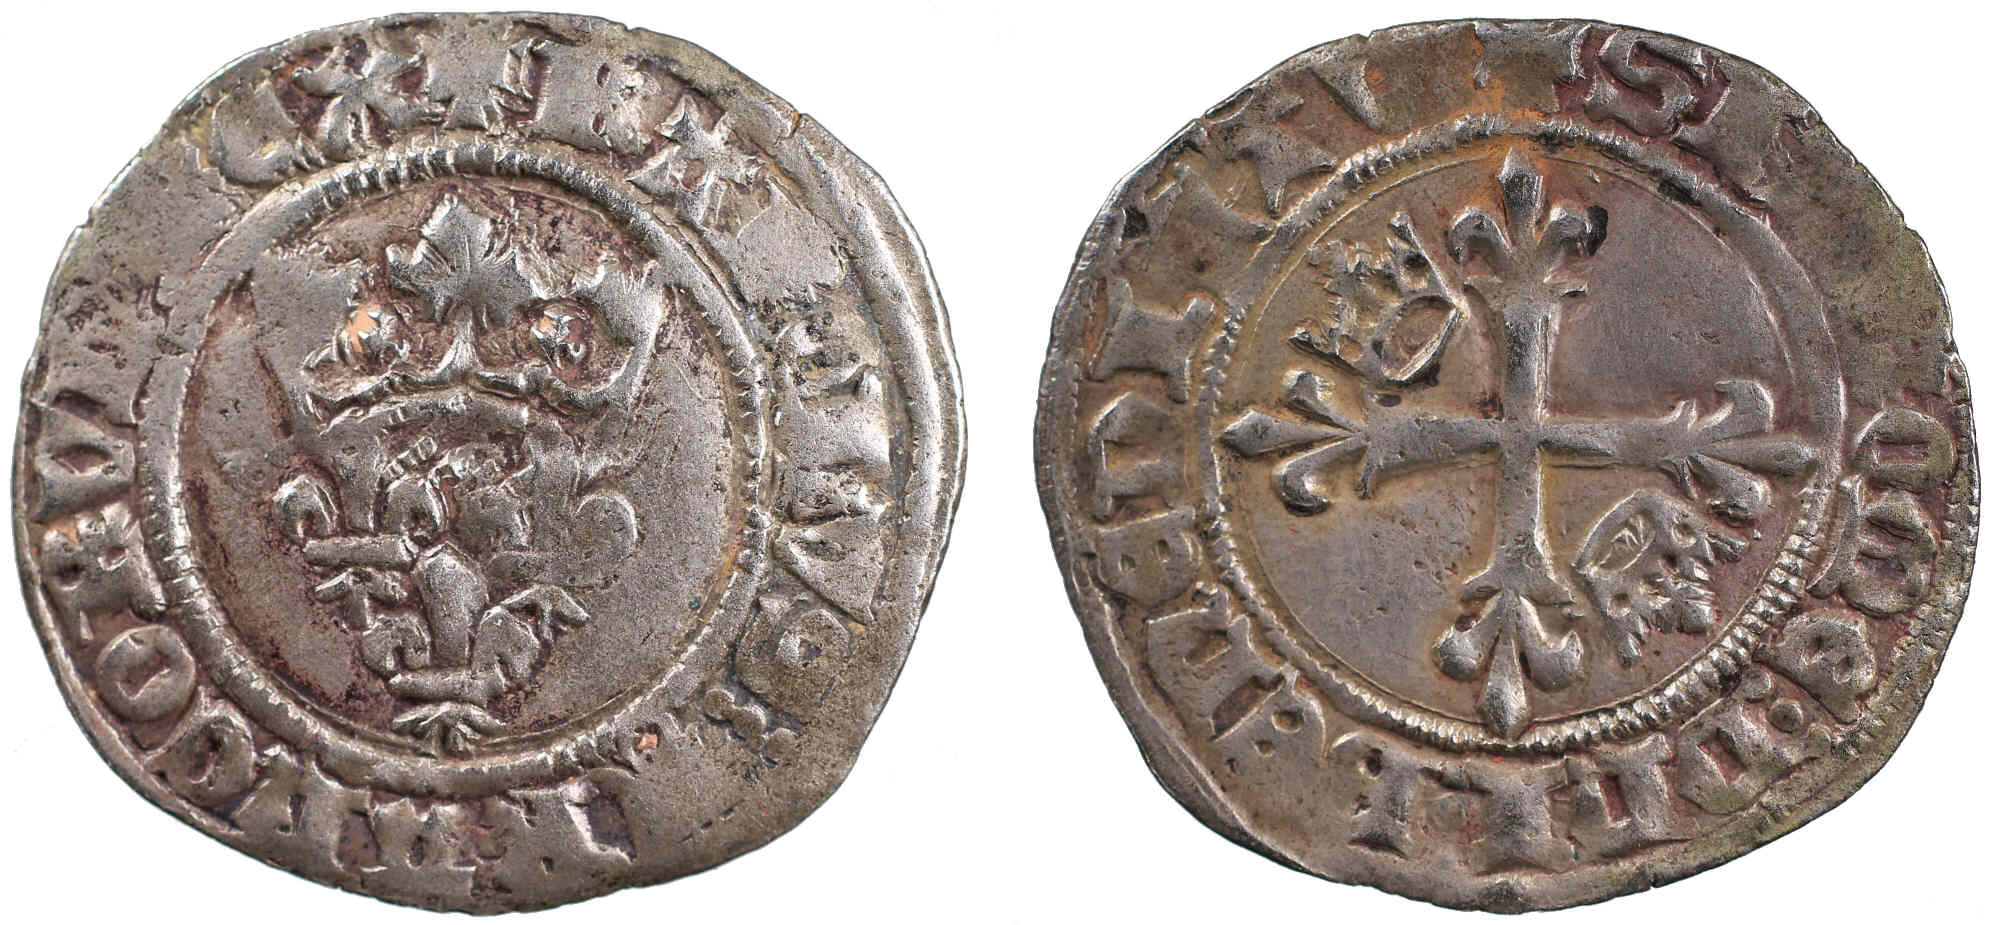 Des gros dits «florettes» ducaux inédits frappés au nom de Charles VI à Chalon-sur-Saône en 1419 – partie 2